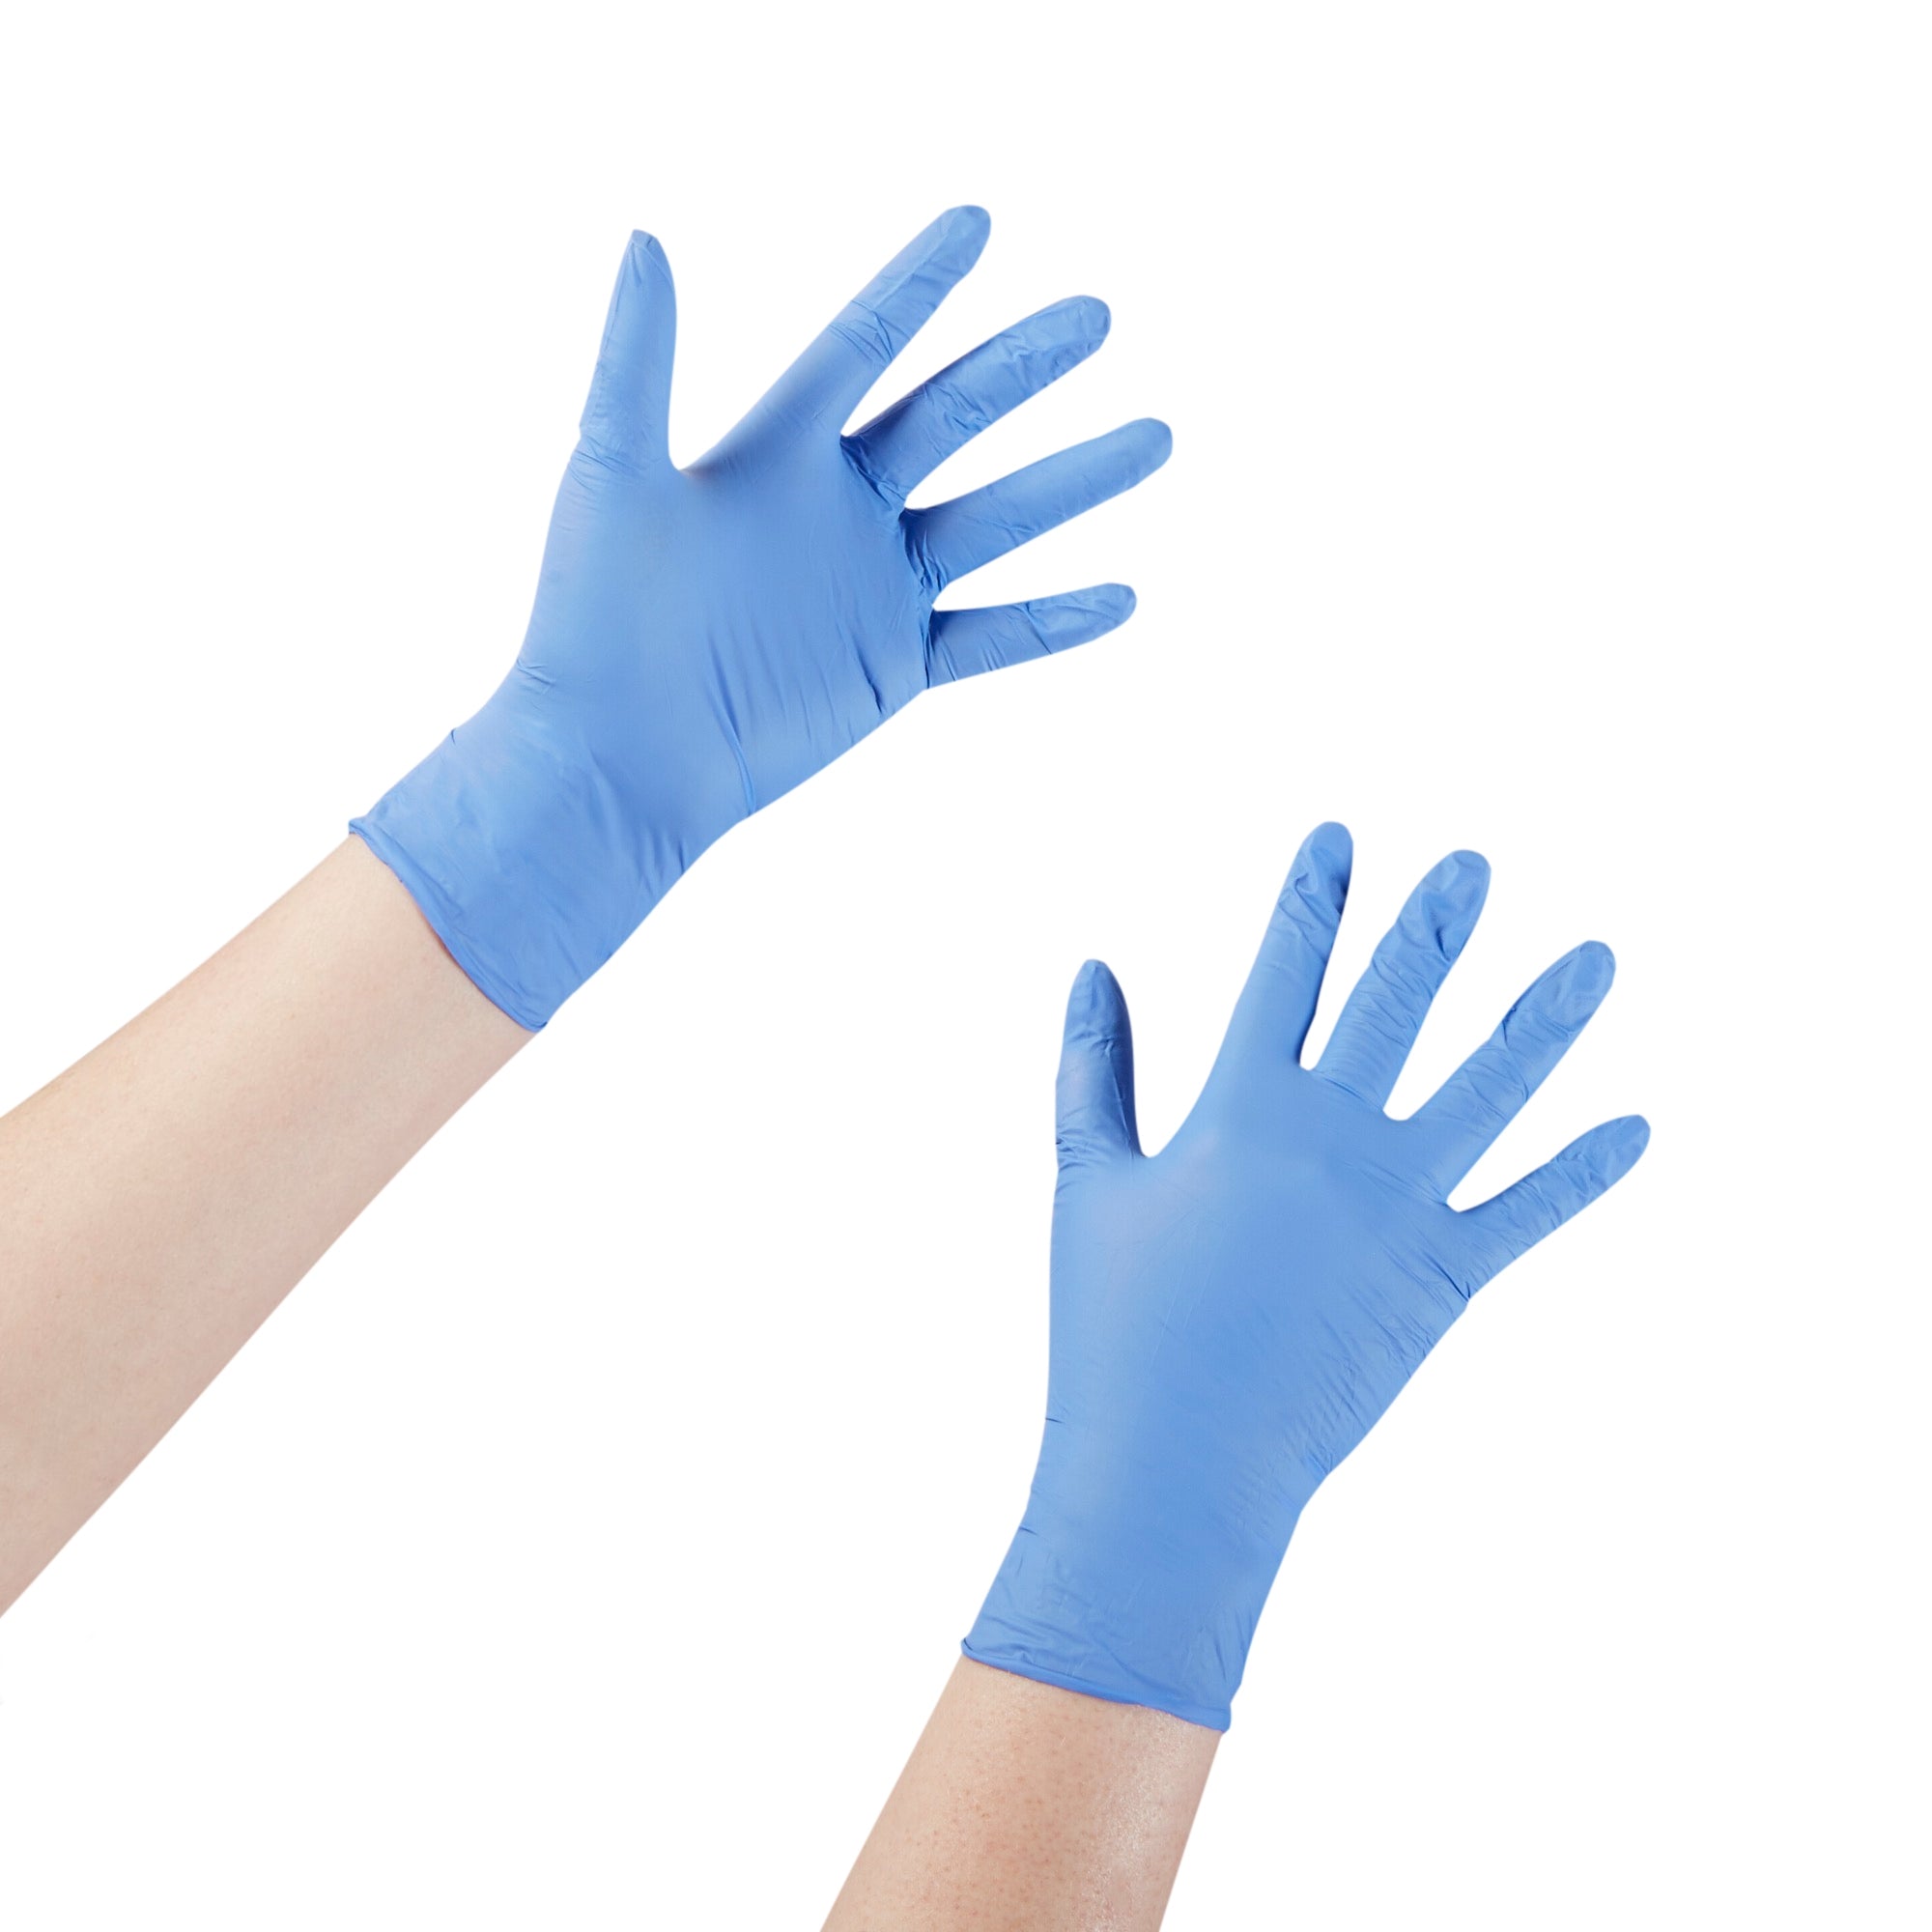 McKesson Confiderm 3.5C Nitrile Gloves, Small - Blue, 2000 Pack